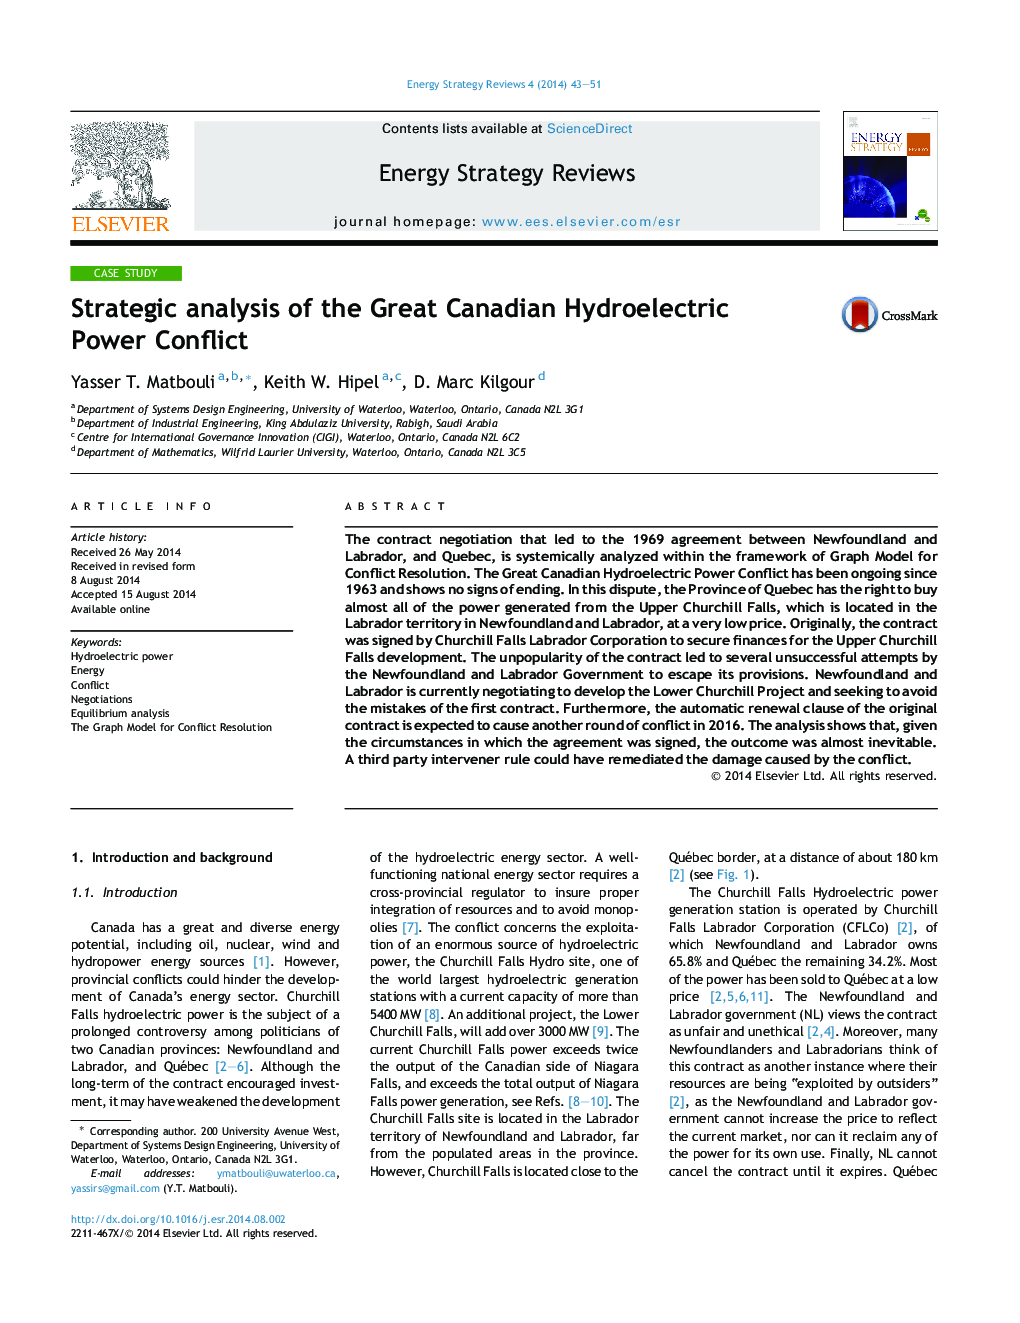 تجزیه و تحلیل استراتژیک مناقشات نیروی برق بزرگ کانادایی 